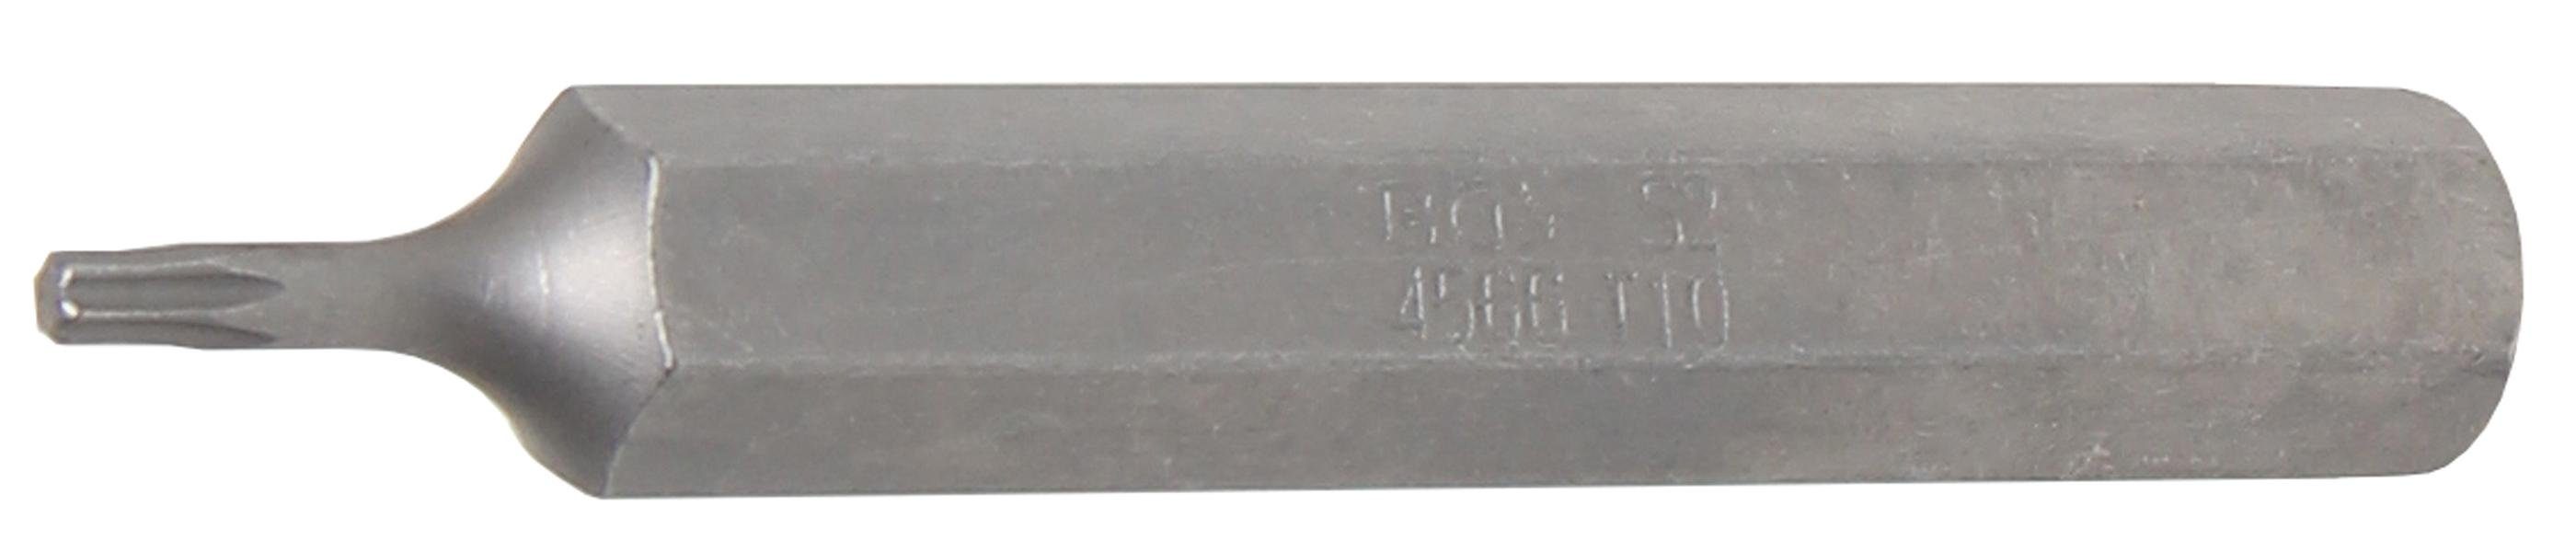 BGS technic Bit-Schraubendreher Bit, Länge 75 mm, Antrieb Außensechskant 10 mm (3/8), T-Profil (für Torx) T10